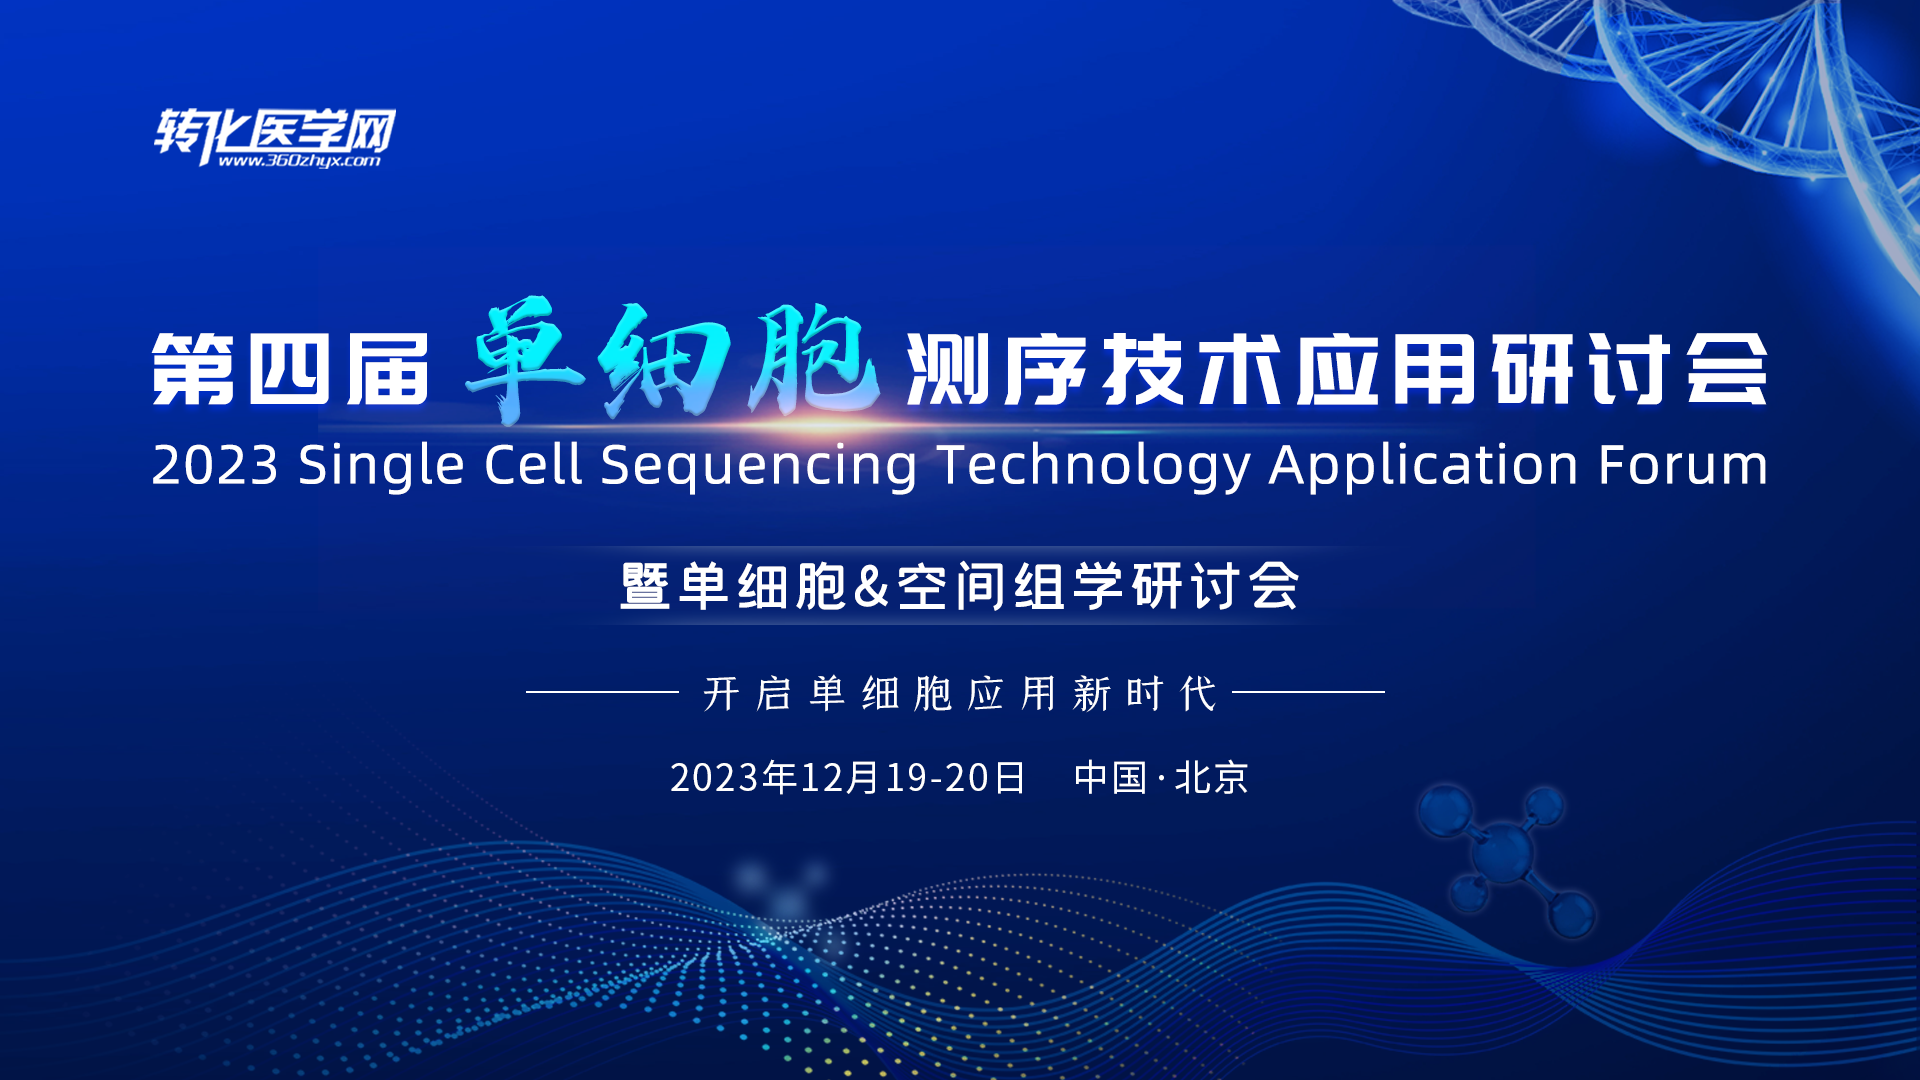 解码DNA邀请您参加2023“第四届单细胞测序技术应用研讨会暨单细胞&空间组学研讨会”